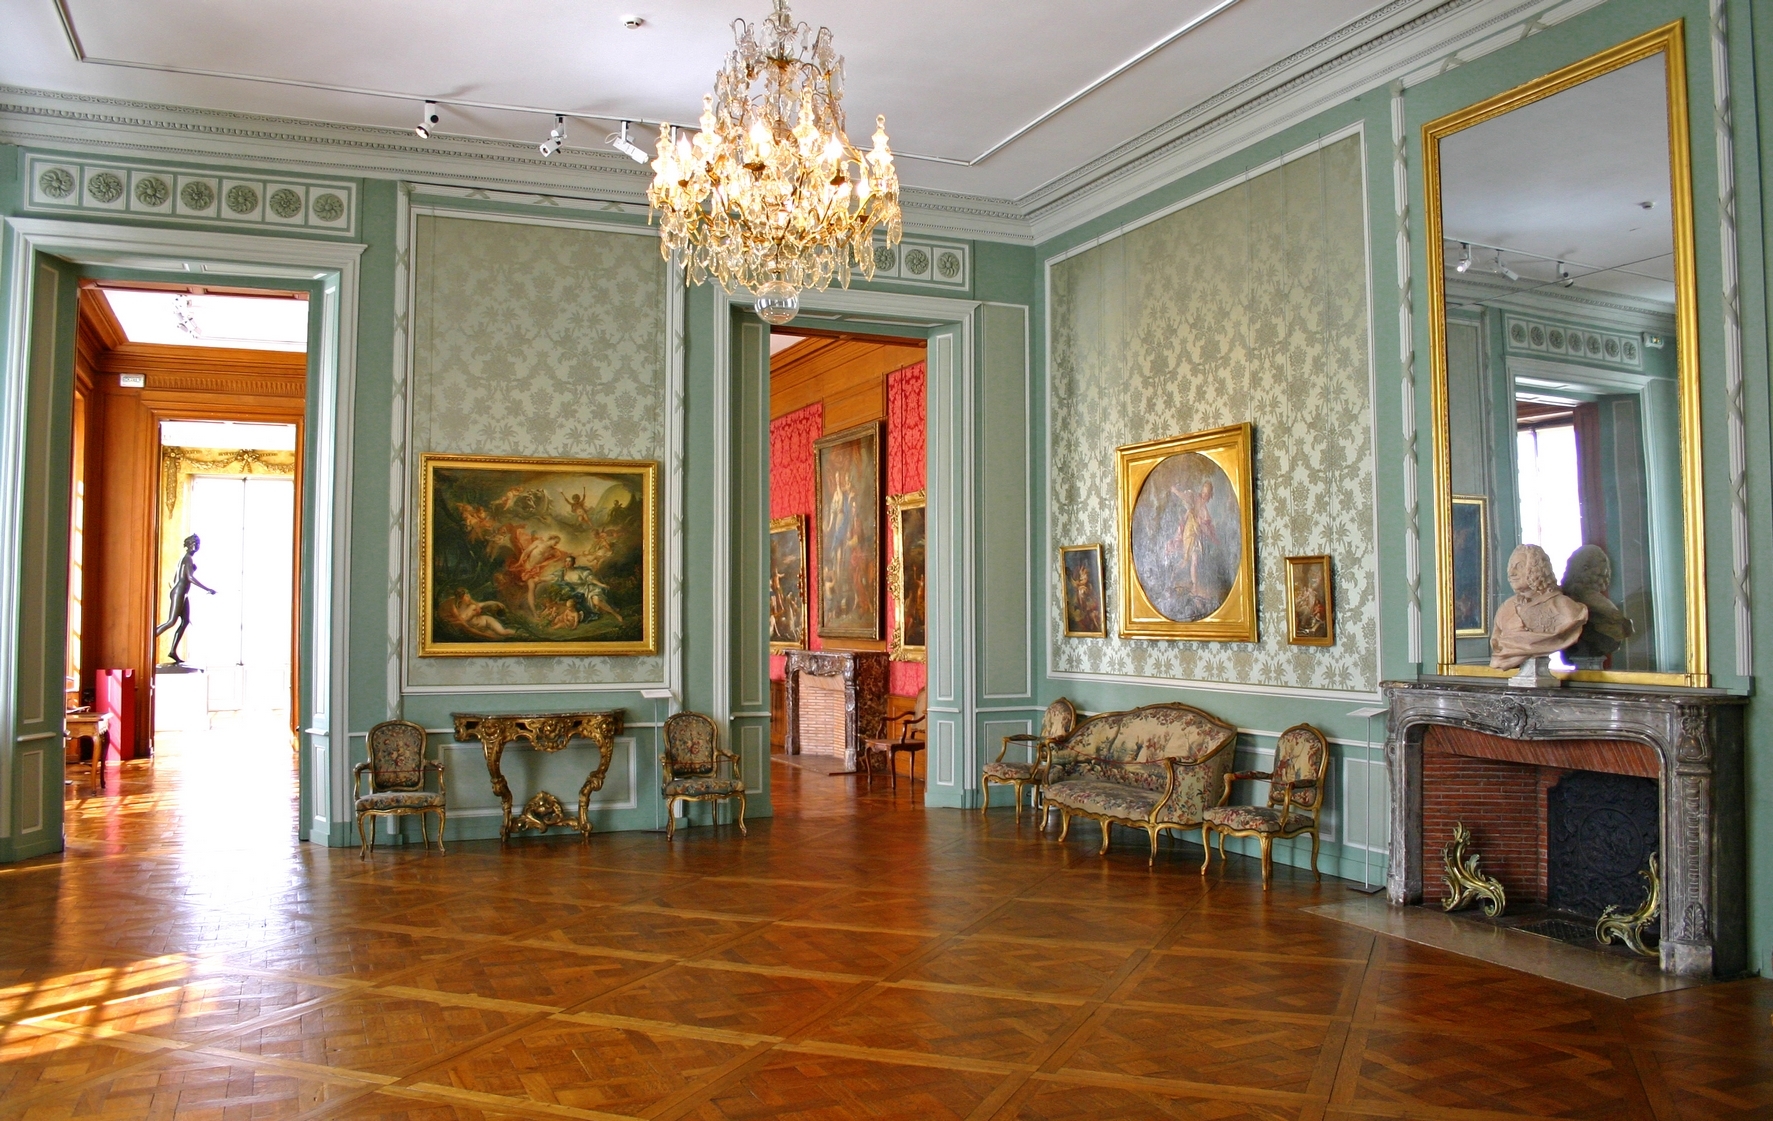 salle-louis-beaux-arts-tours (2)